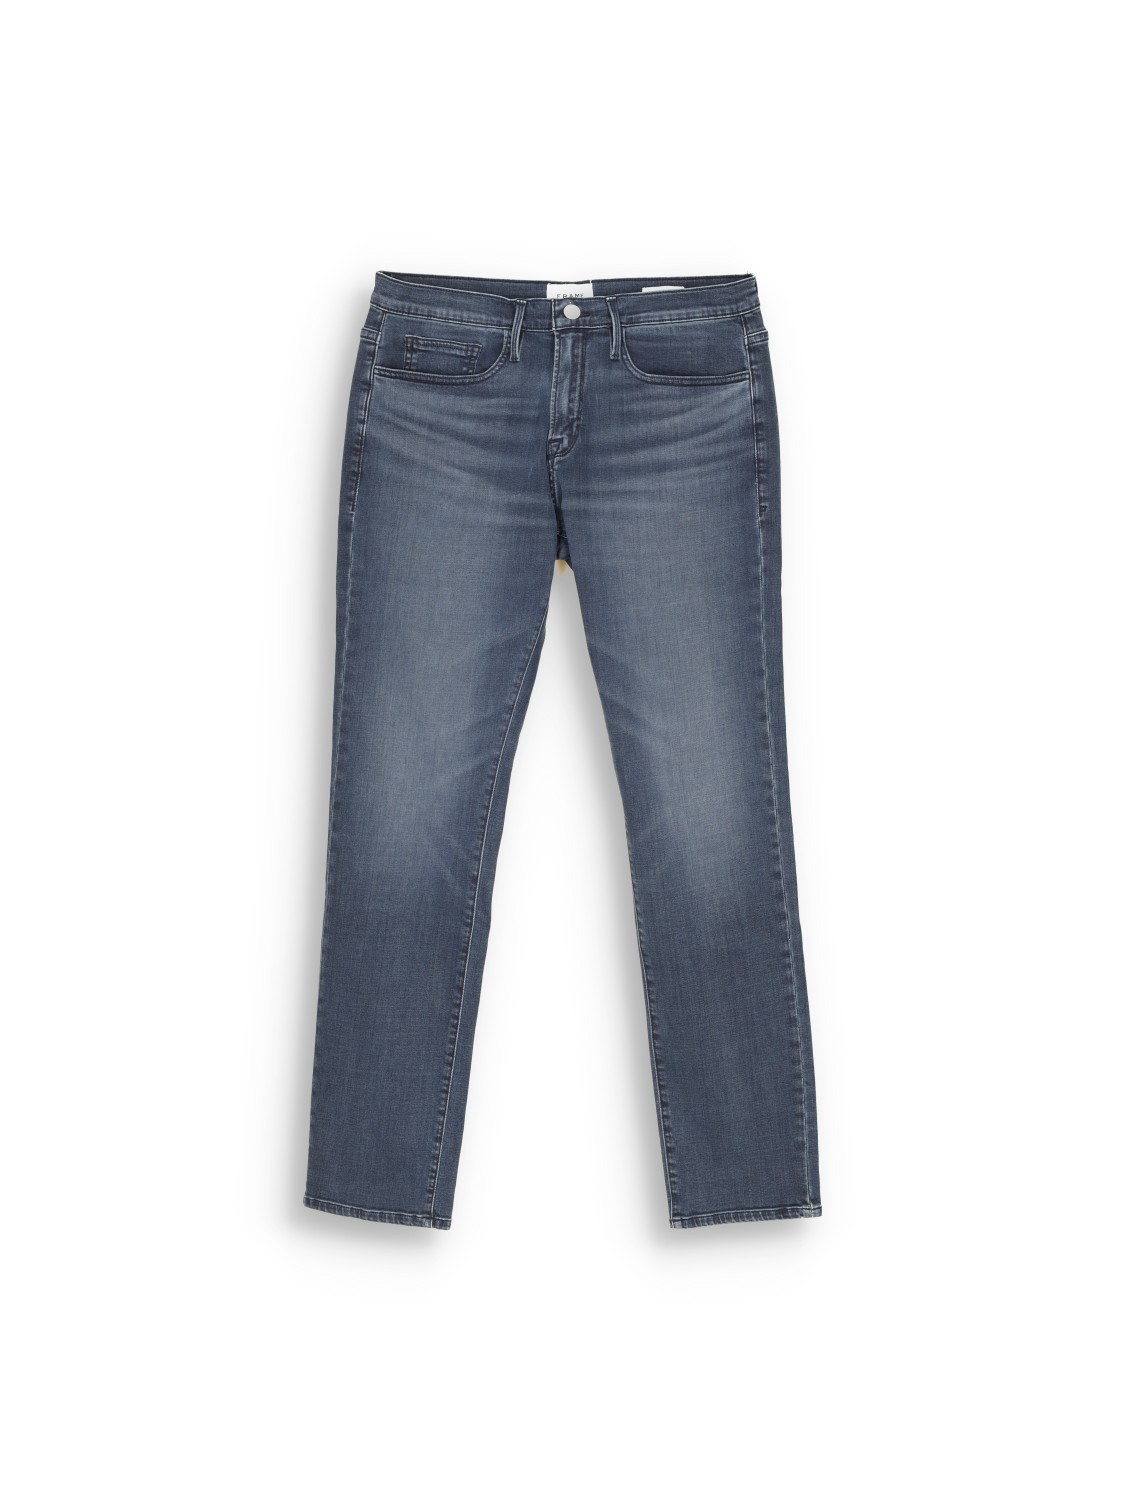 L'Homme Slim - cotton jeans 